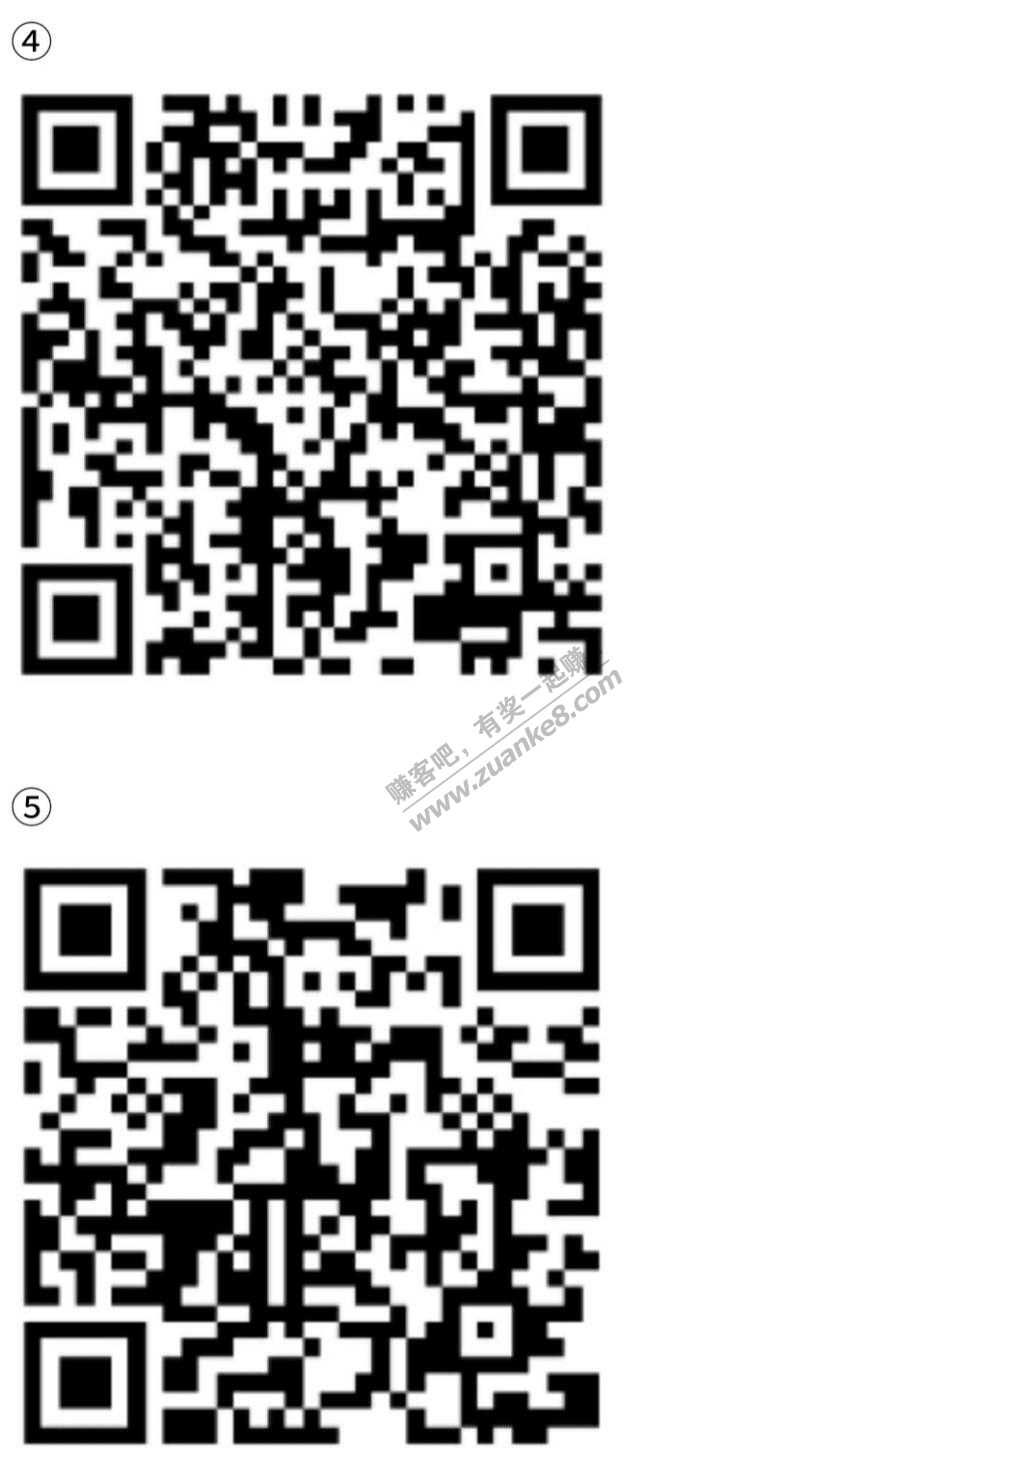 线报-「微信扫码」第3个和第4个活动顺丰寄大件的券;第5个是德玛快递的券-惠小助(52huixz.com)